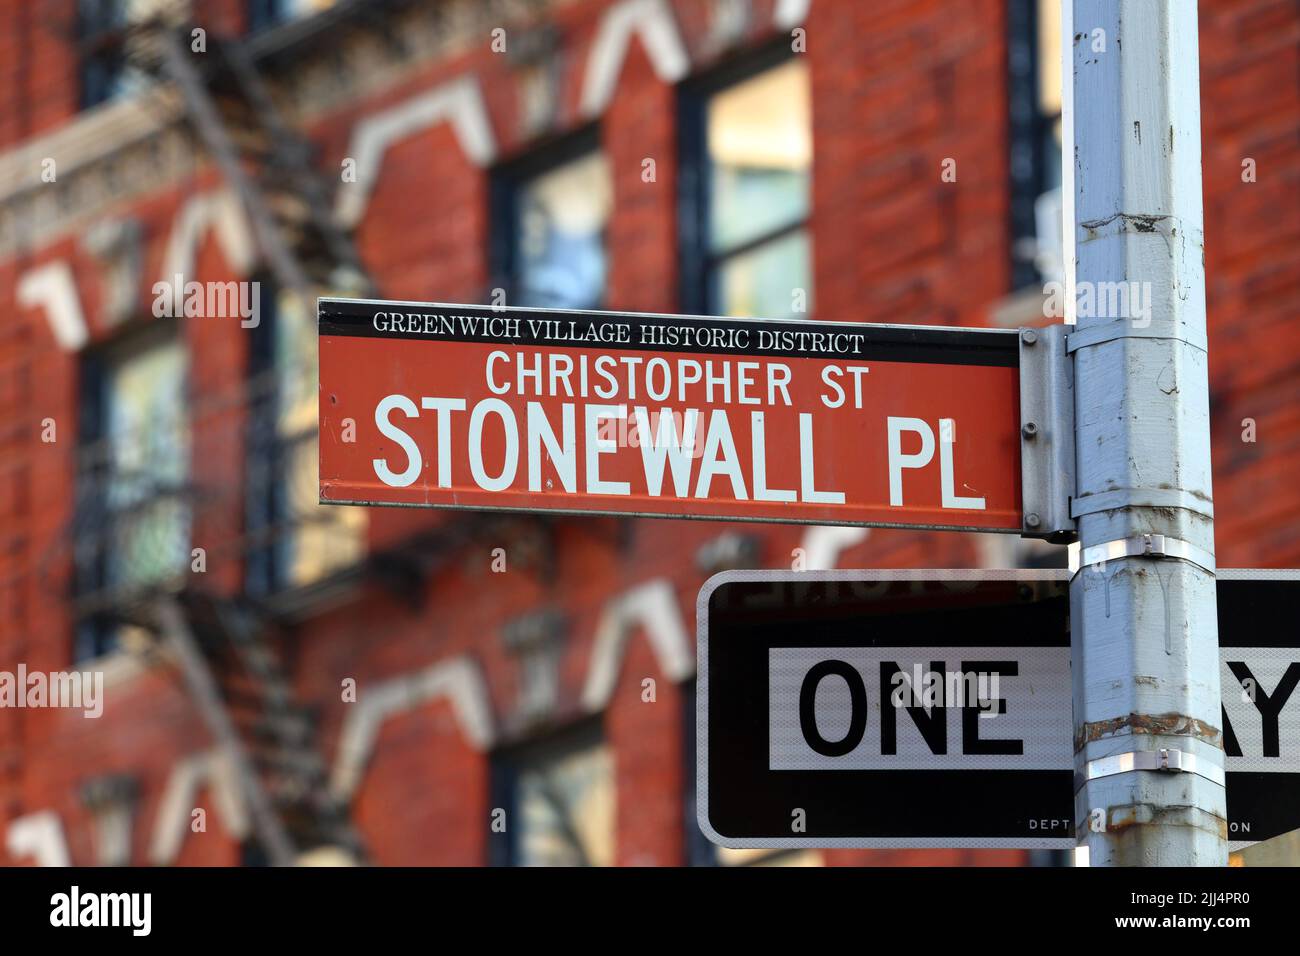 Christopher Street, panneau de rue Stonewall place dans le quartier historique de Greenwich Village à Manhattan, New York. Christopher St, Stonewall PL. Banque D'Images